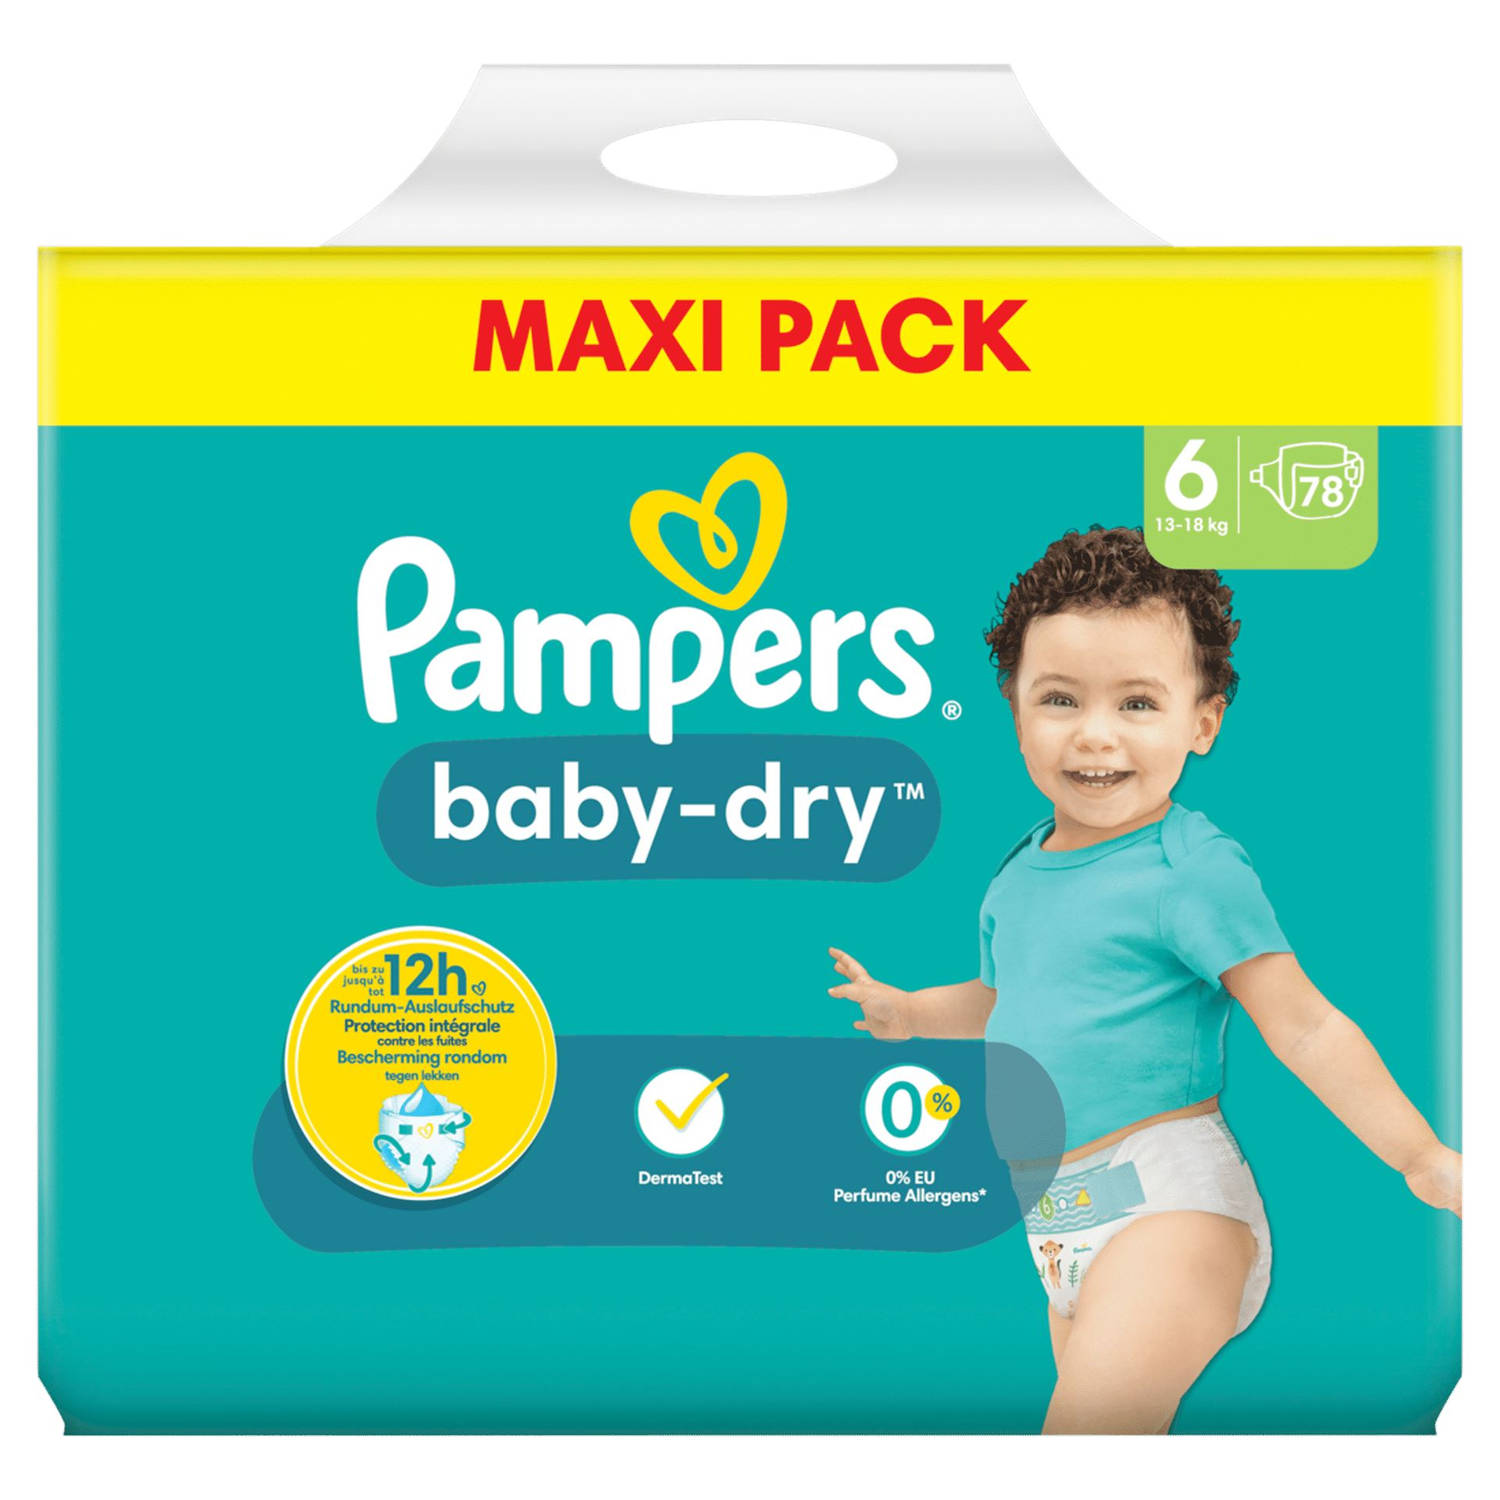 Pampers Baby-Dry luiers - Maat 6 (13-18kg) - 78 luiers